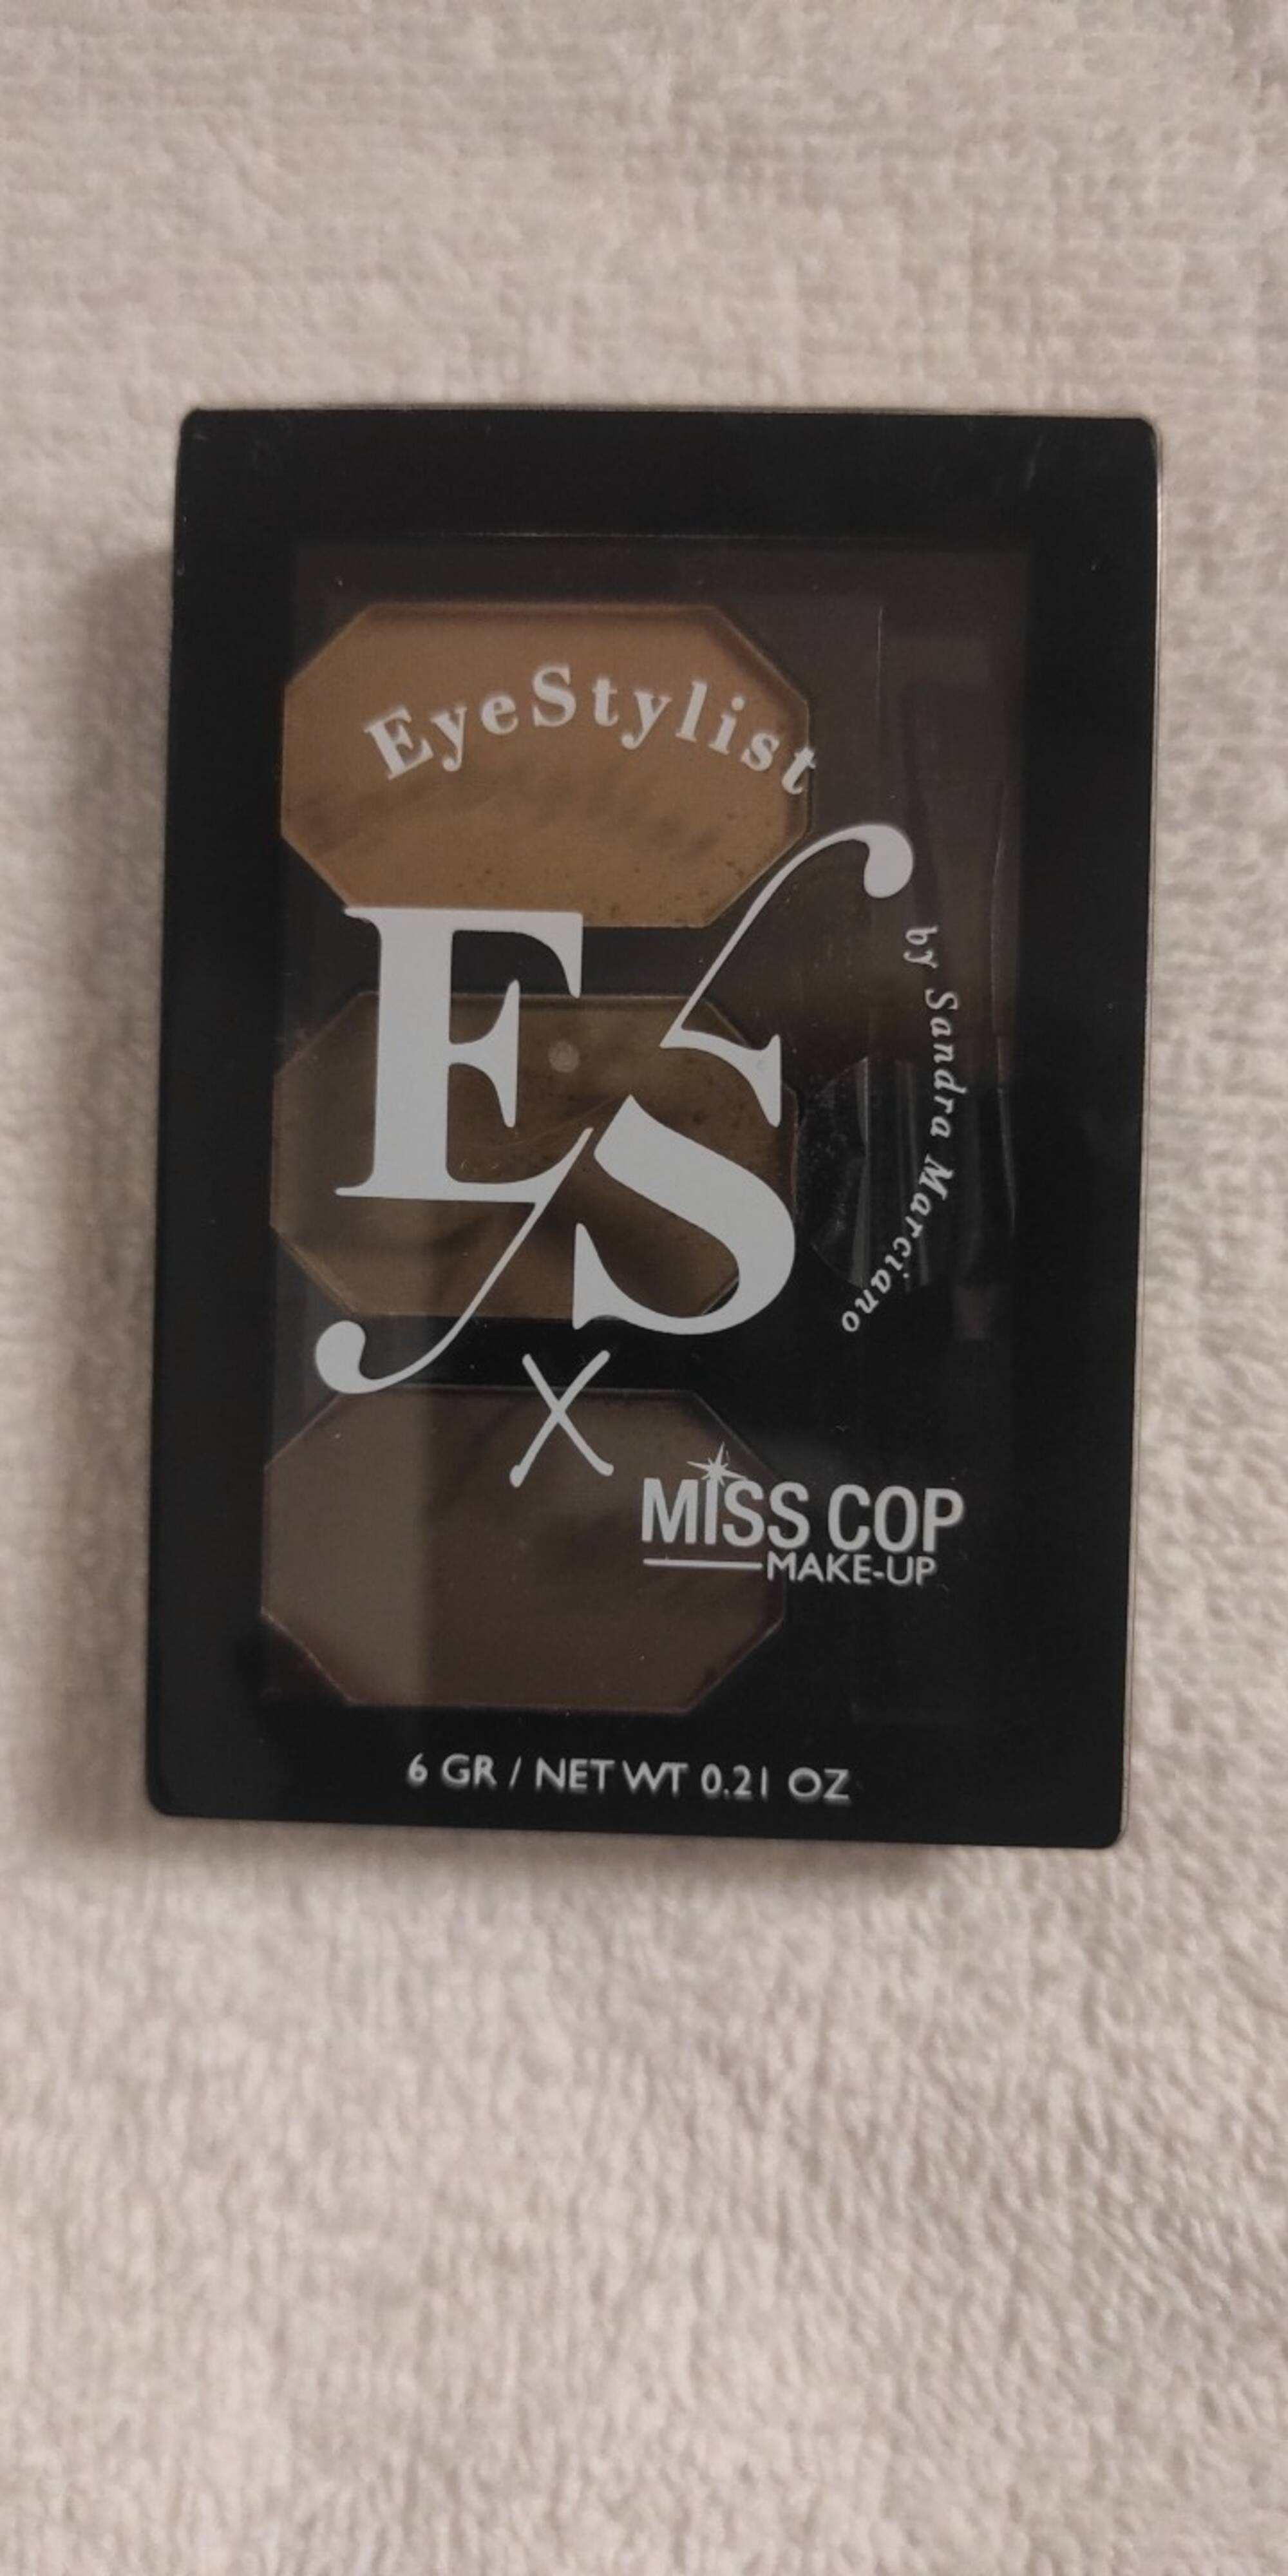 MISS COP - Eyestylist kit sourcils 